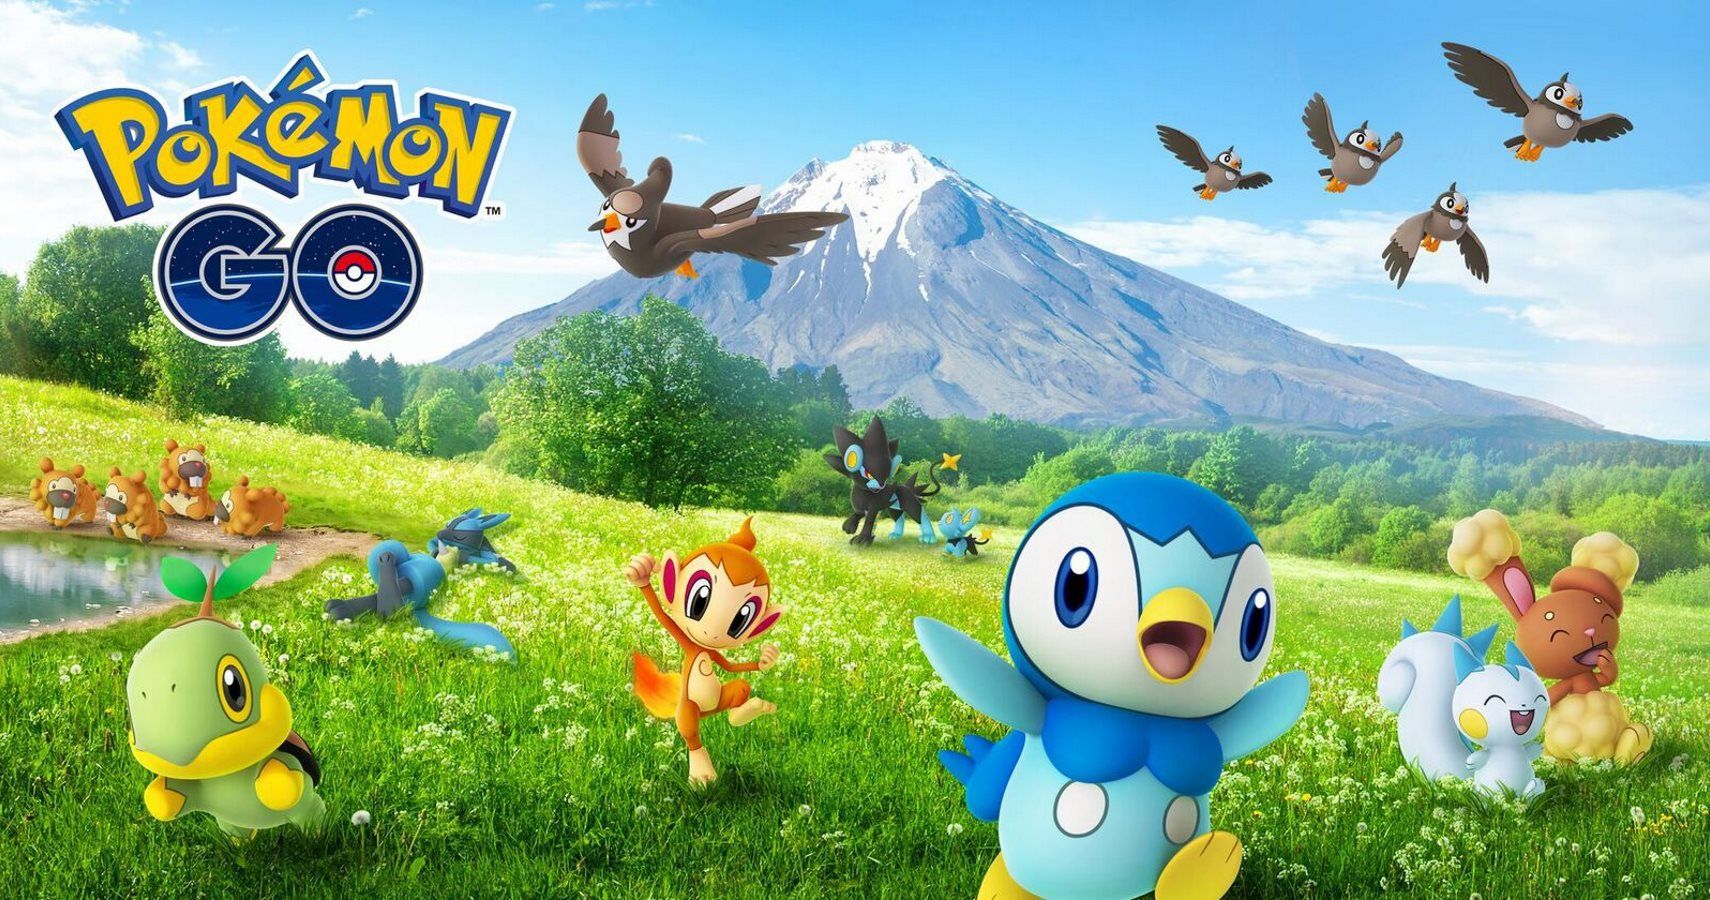 Pokémon GO Launches Gen 4 Regional Exclusives